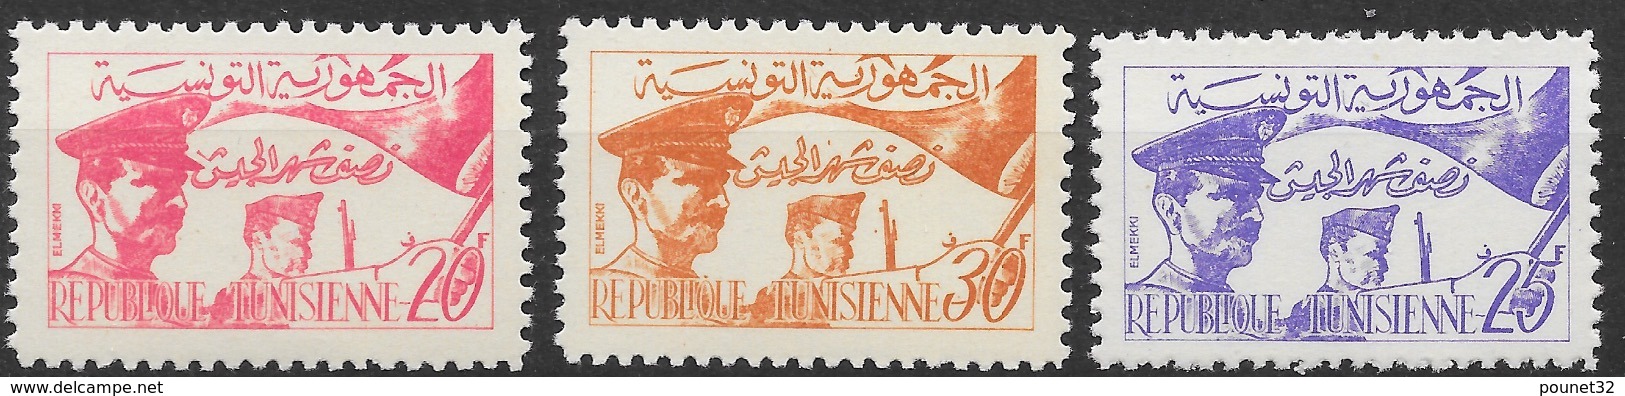 TUNISIE REPUBLIQUE TUNISIENNE SERIE N° 444/446 NEUVE ** GOMME SANS CHARNIERE - Tunisie (1956-...)